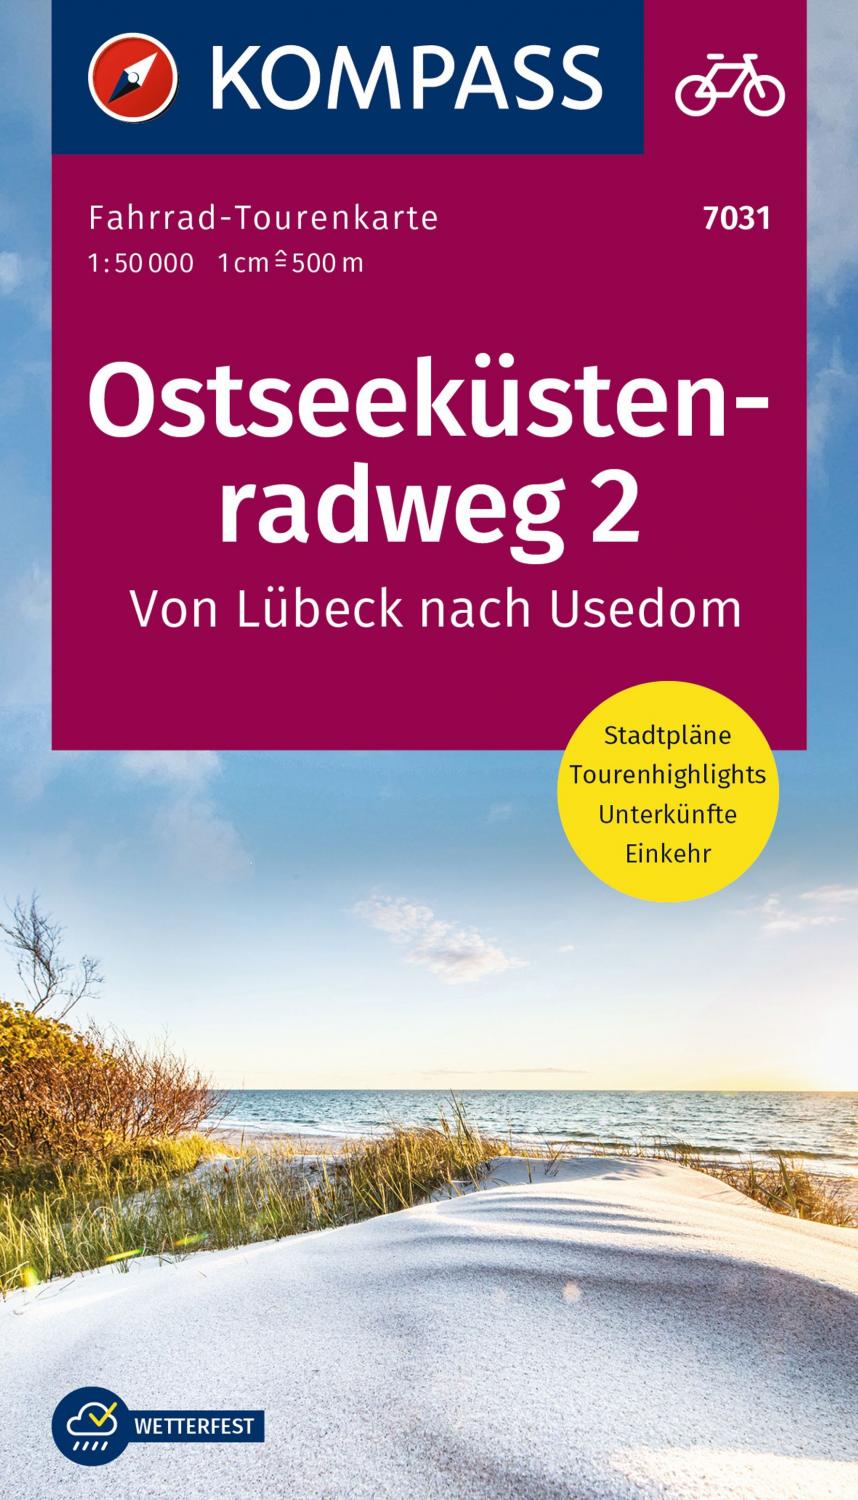 Ostseeküsten-radweg 2 - Piste cyclable de la mer Baltique entre Lübeck et Usedom